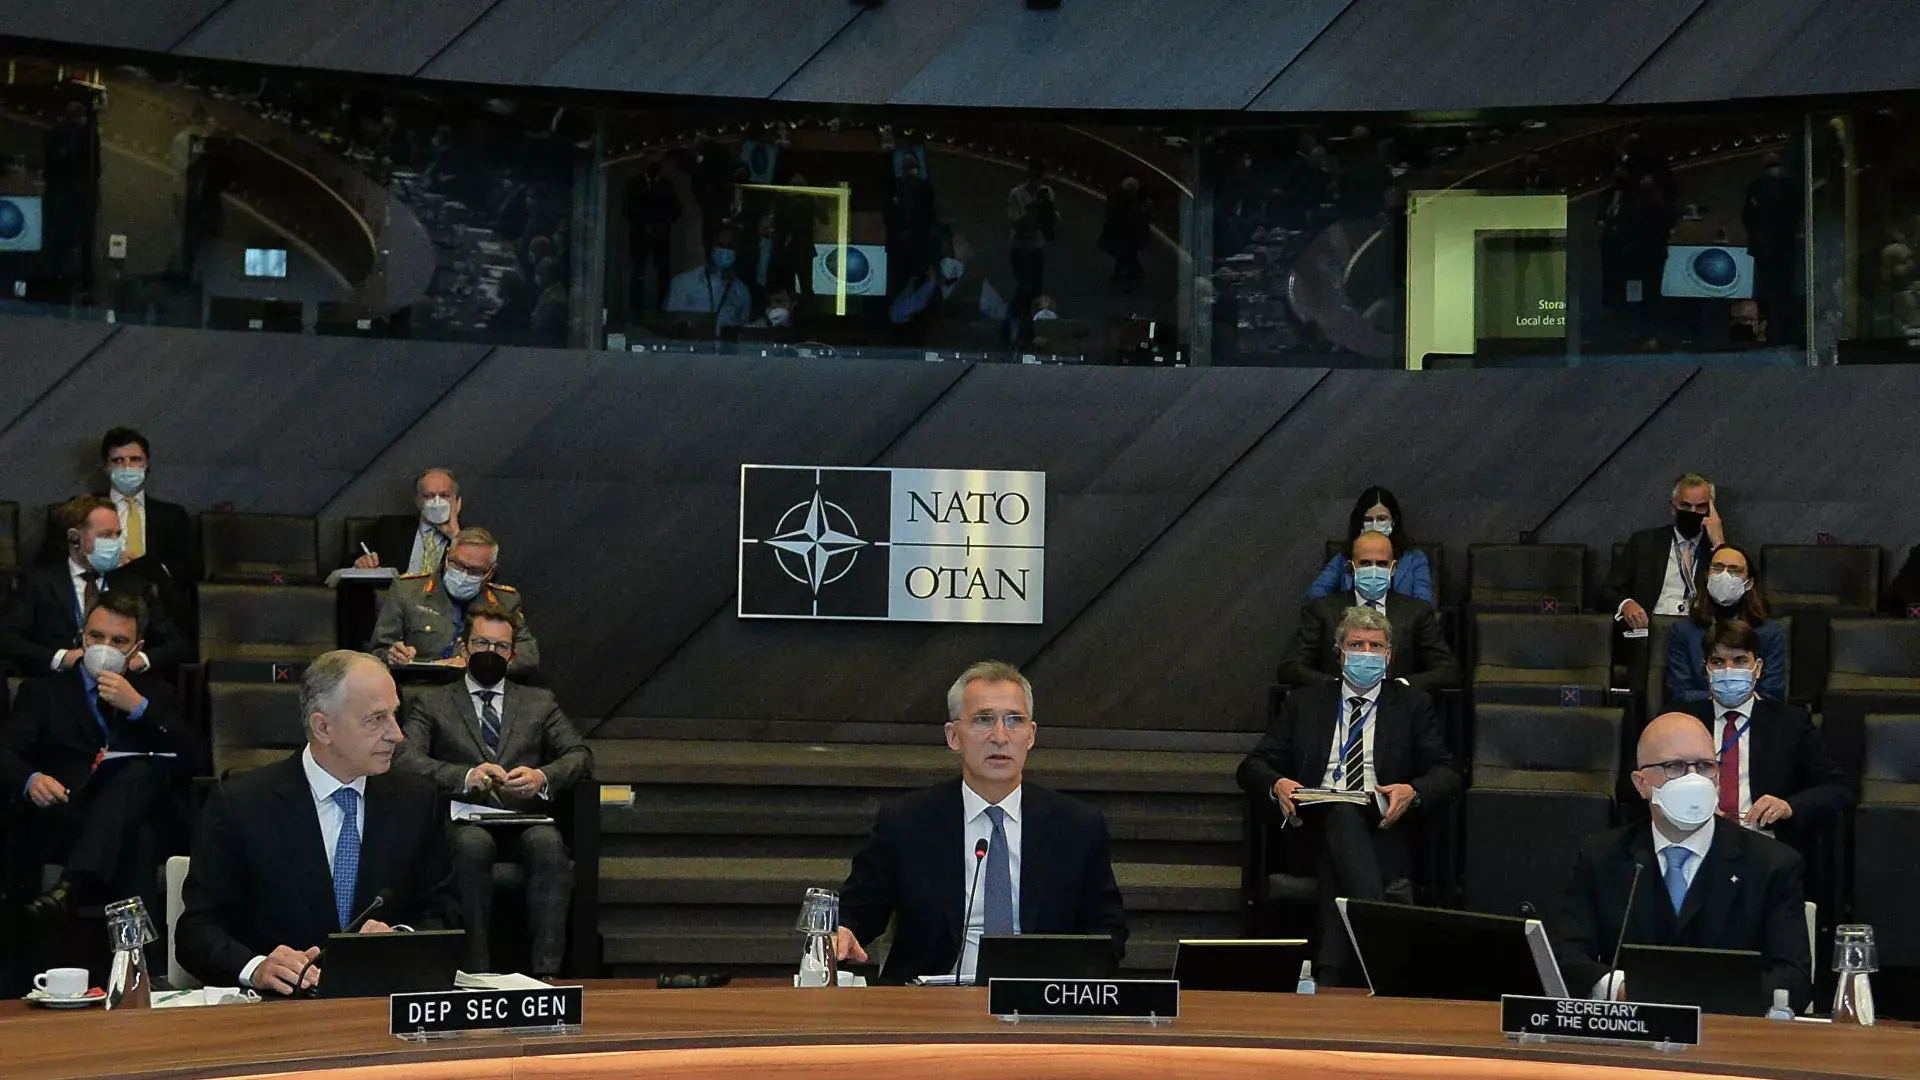 Переговоры с нато. НАТО заседание 2022. Заседание совета Россия–НАТО 2022. Переговоры Россия НАТО январь 2022. НАТО заседание 2002.